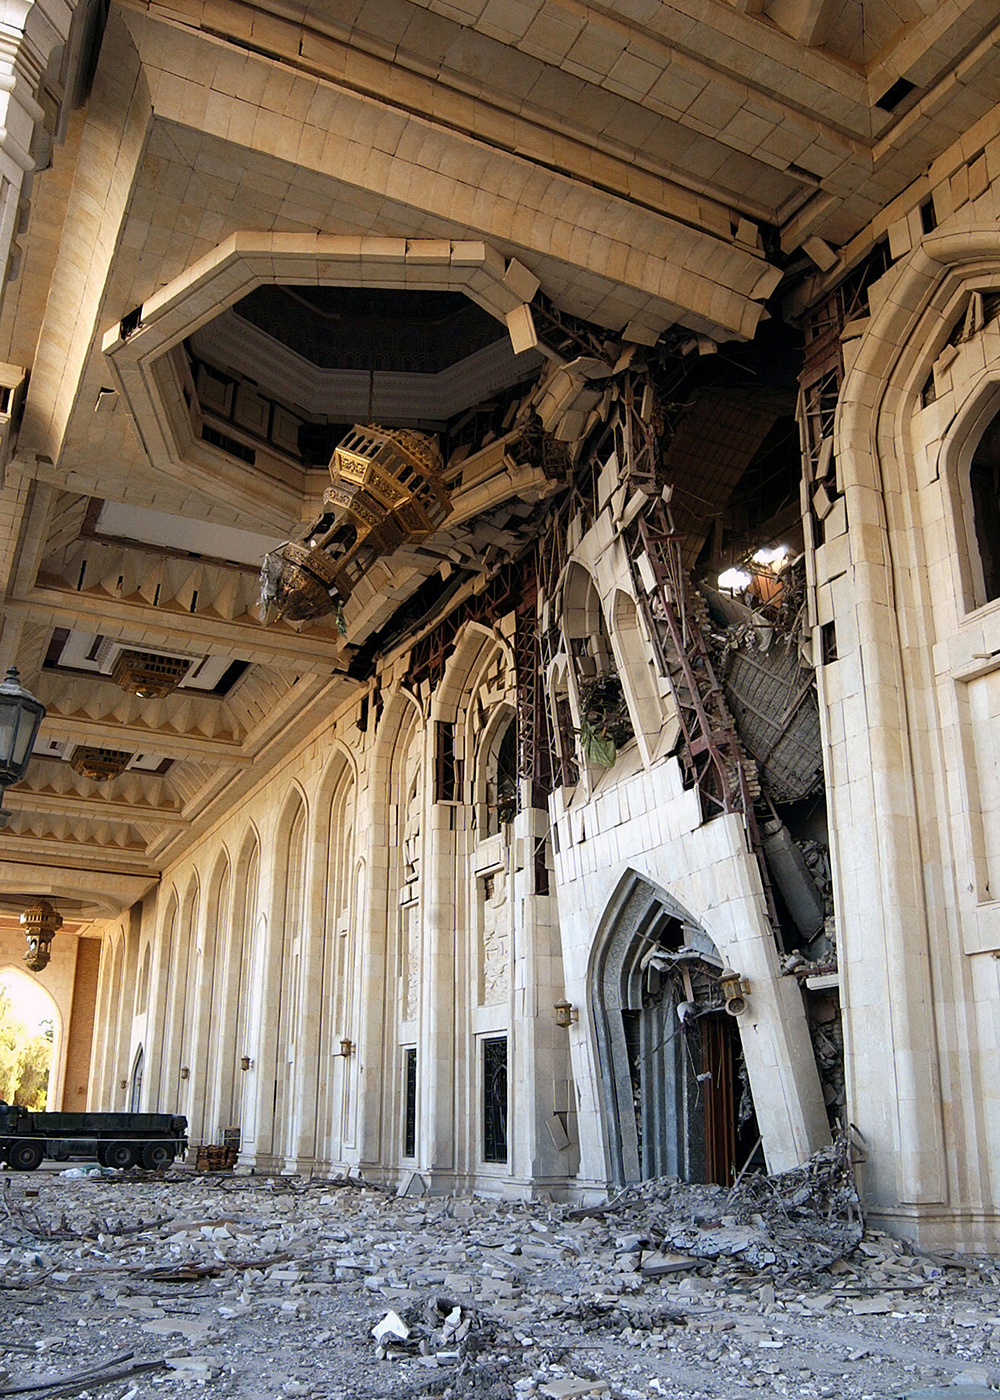 La fachada y pórtico dañados del cuartel general del Partido Baaz tras bombardeos en la Zona Internacional, Bagdad, Irak, 23 de noviembre de 2003.